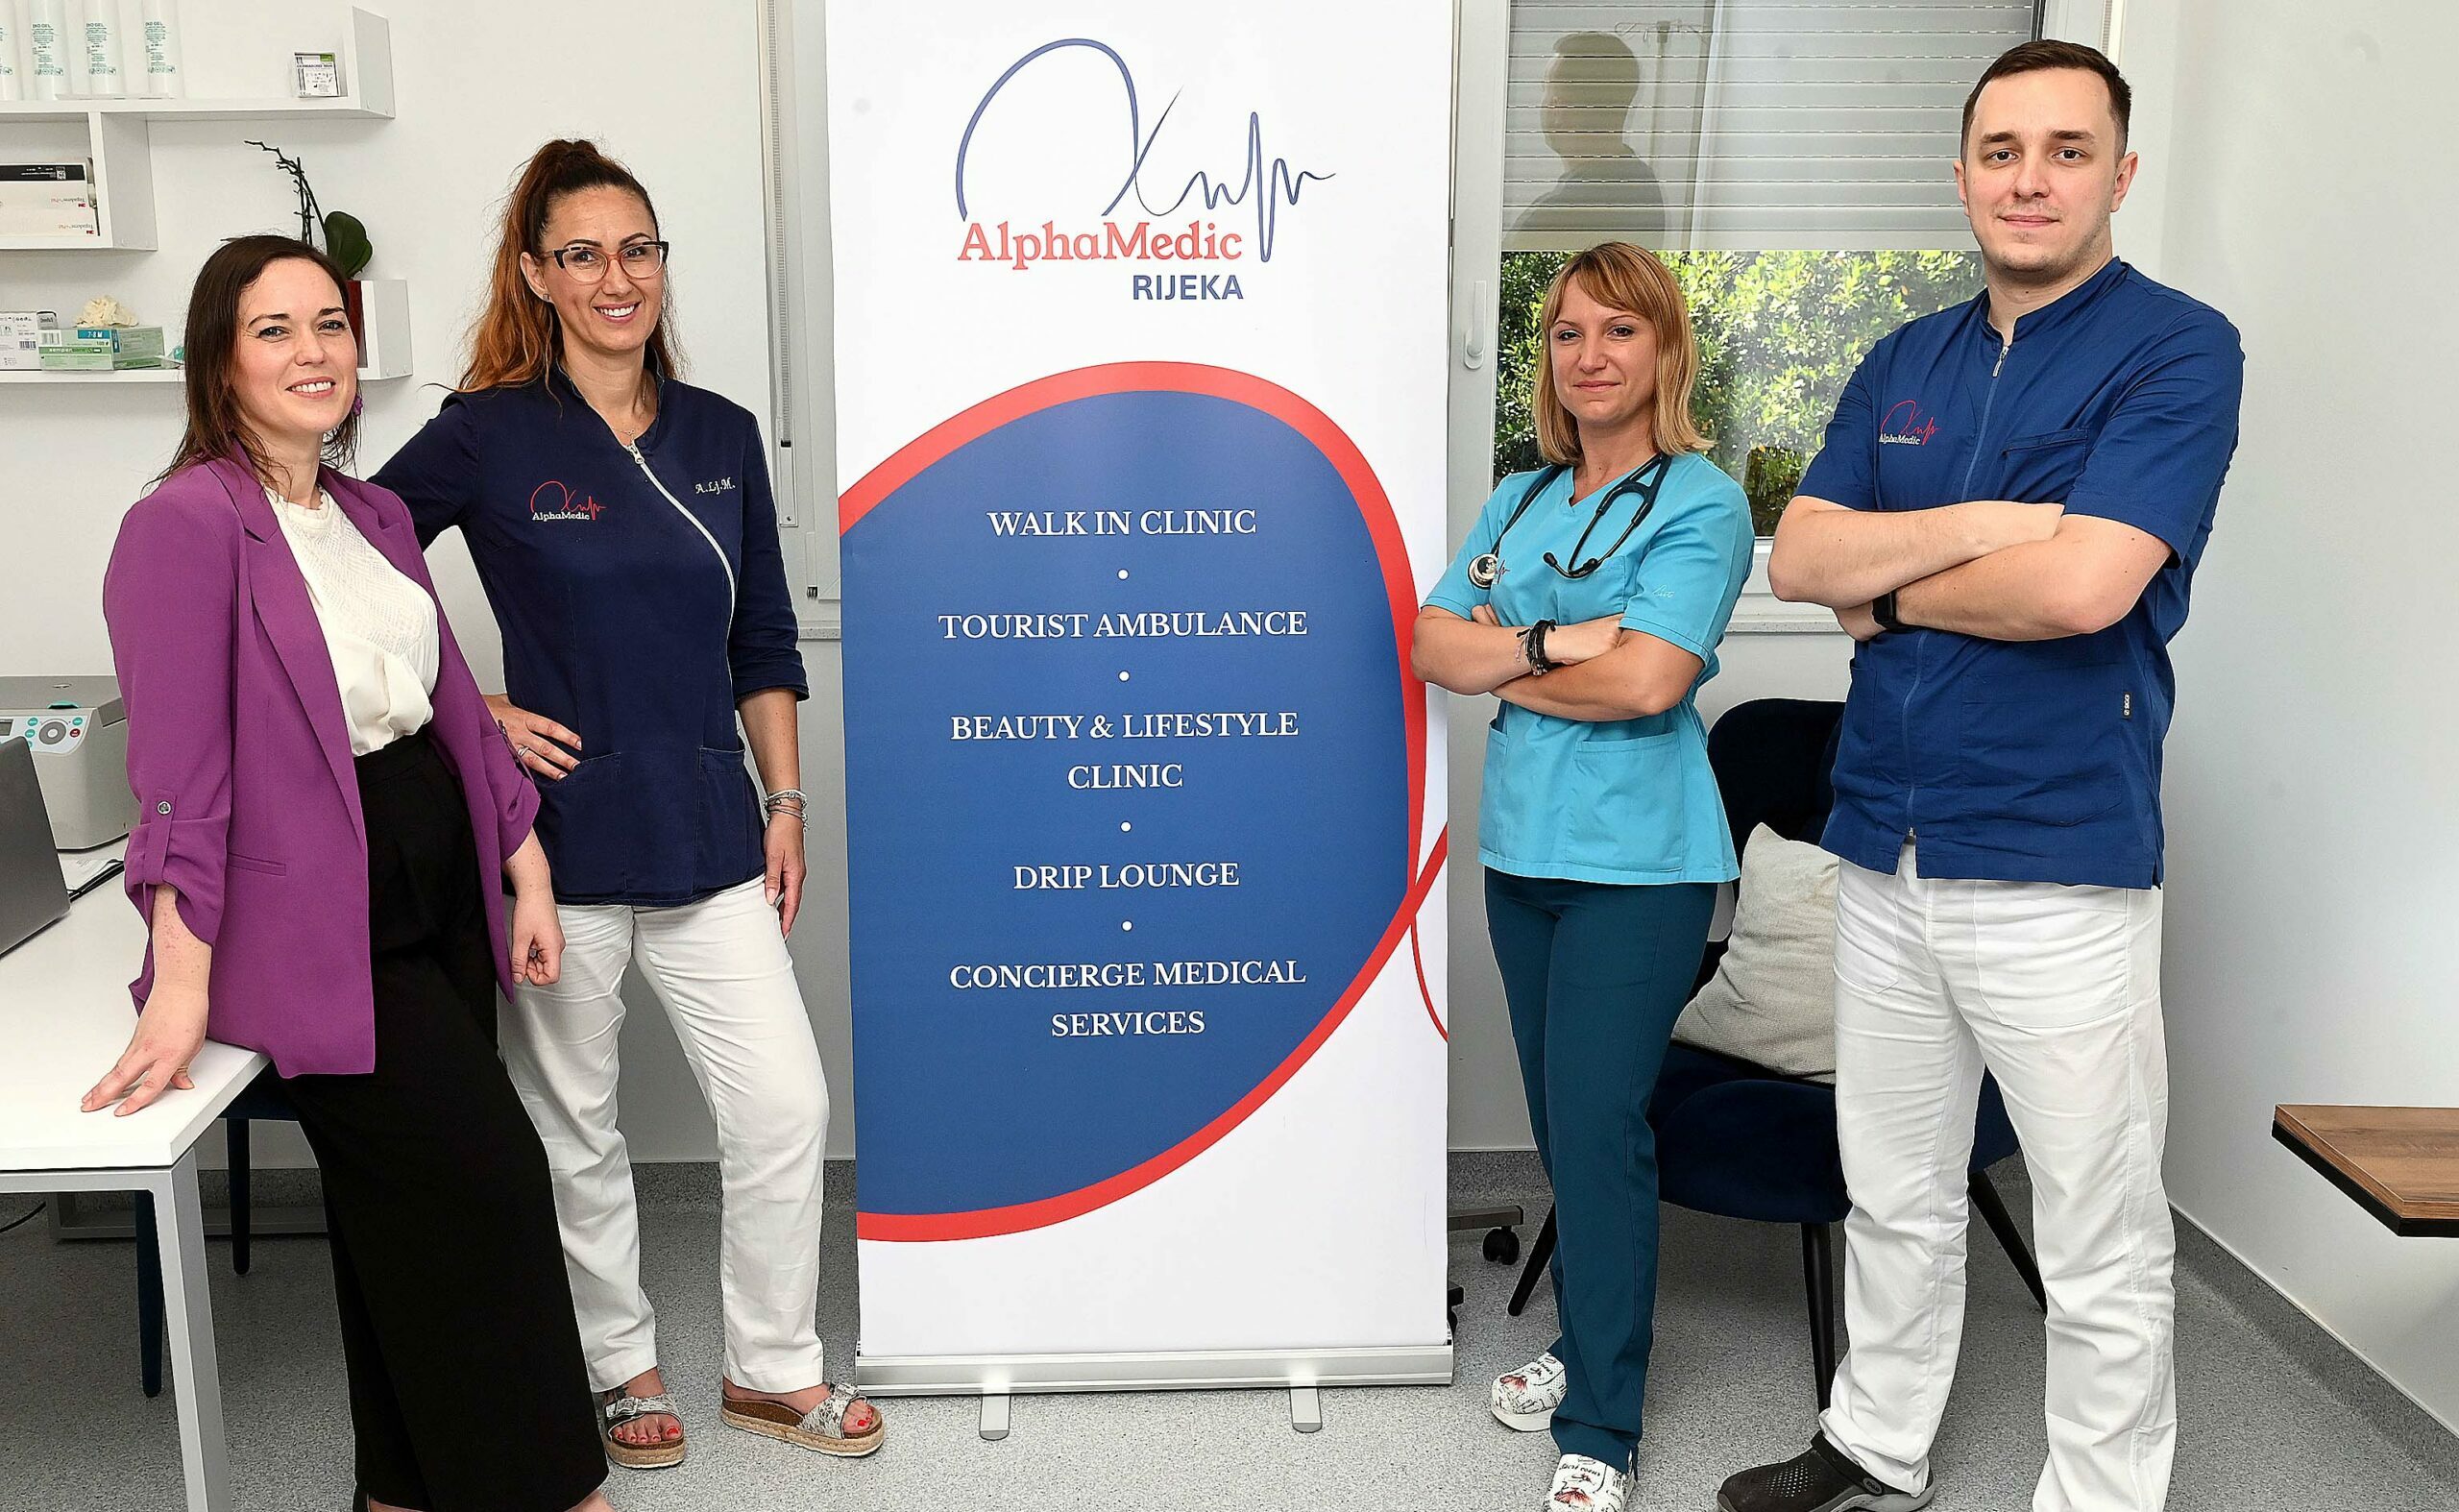 Stručni tim AlphaMedic klinike, Foto: Marko Gracin